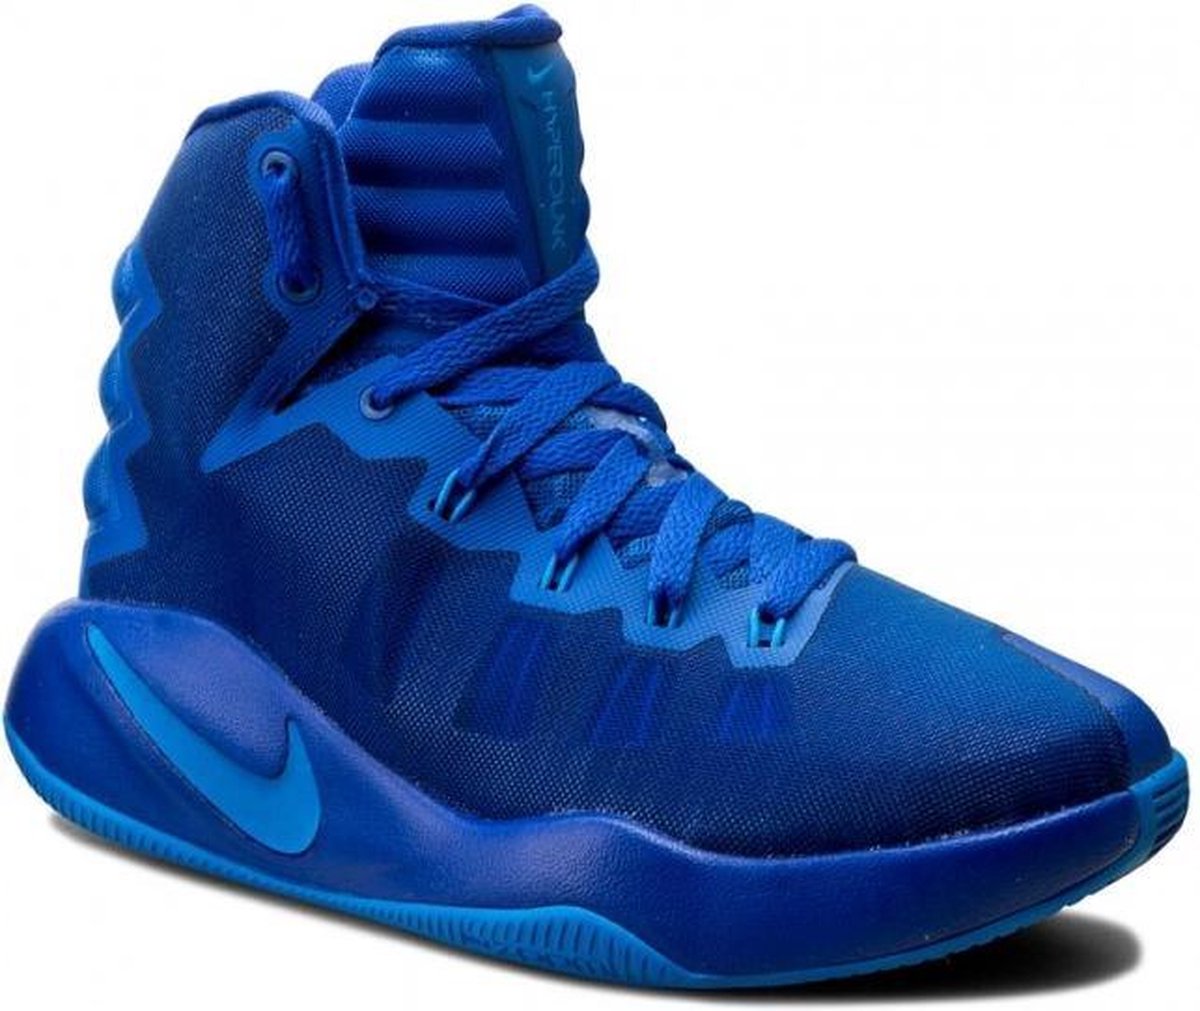 Nike Hyperdunk basketbalschoen - maat 39,5 - kobaltblauw | bol.com